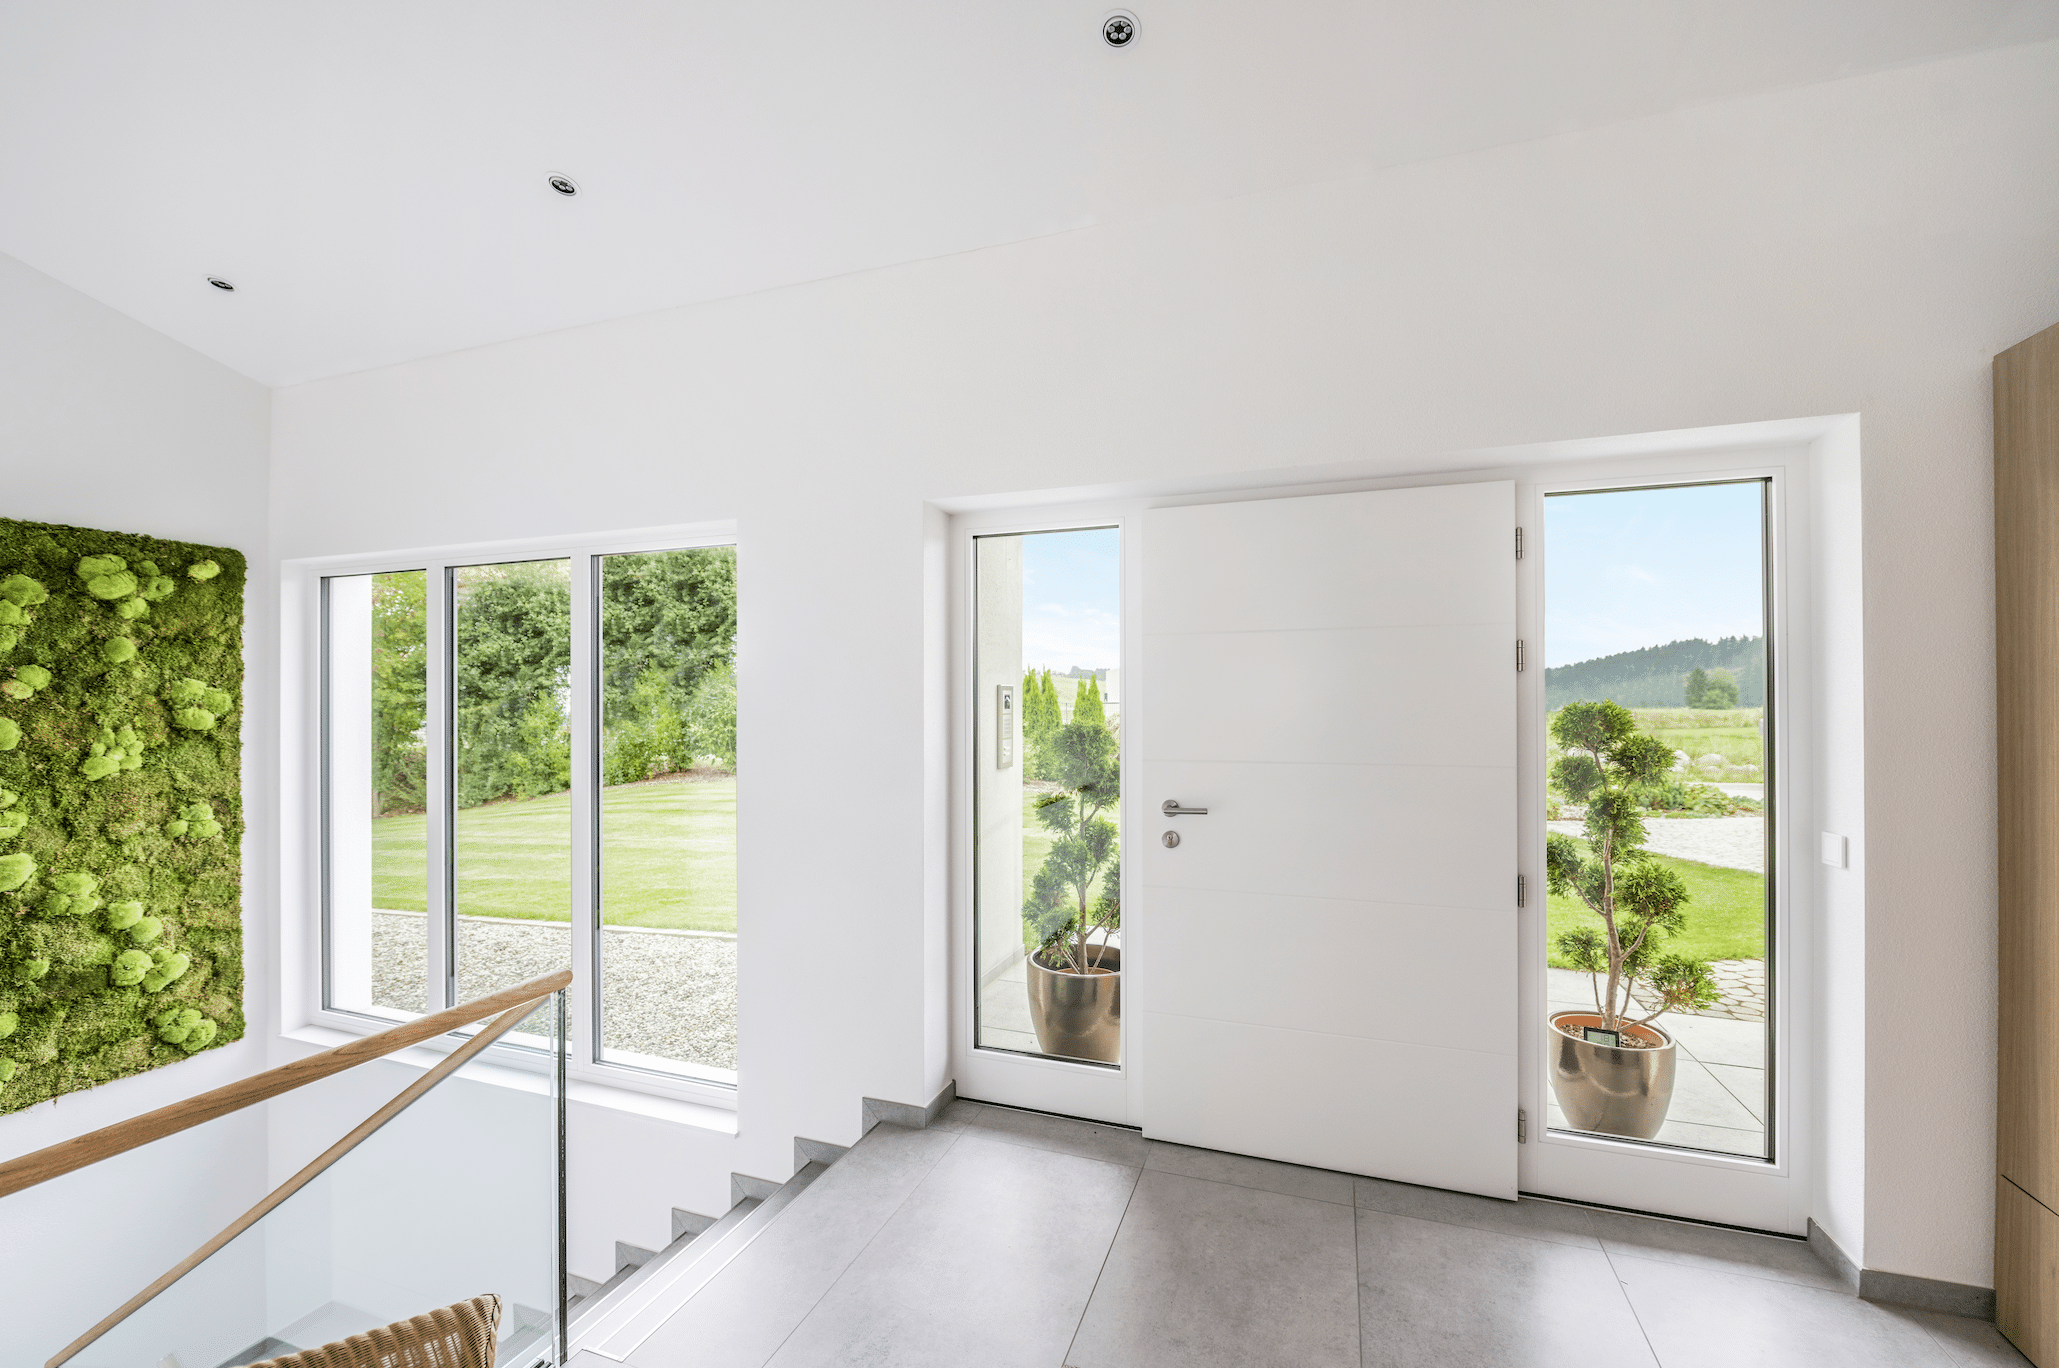 Internorm zeigt den Eingangsbereich eines Einfamilienhauses mit einer weissen Haustüre, großen Sichtfenstern einer Glaswand und mit Treppen die in das Untergeschoss führen.